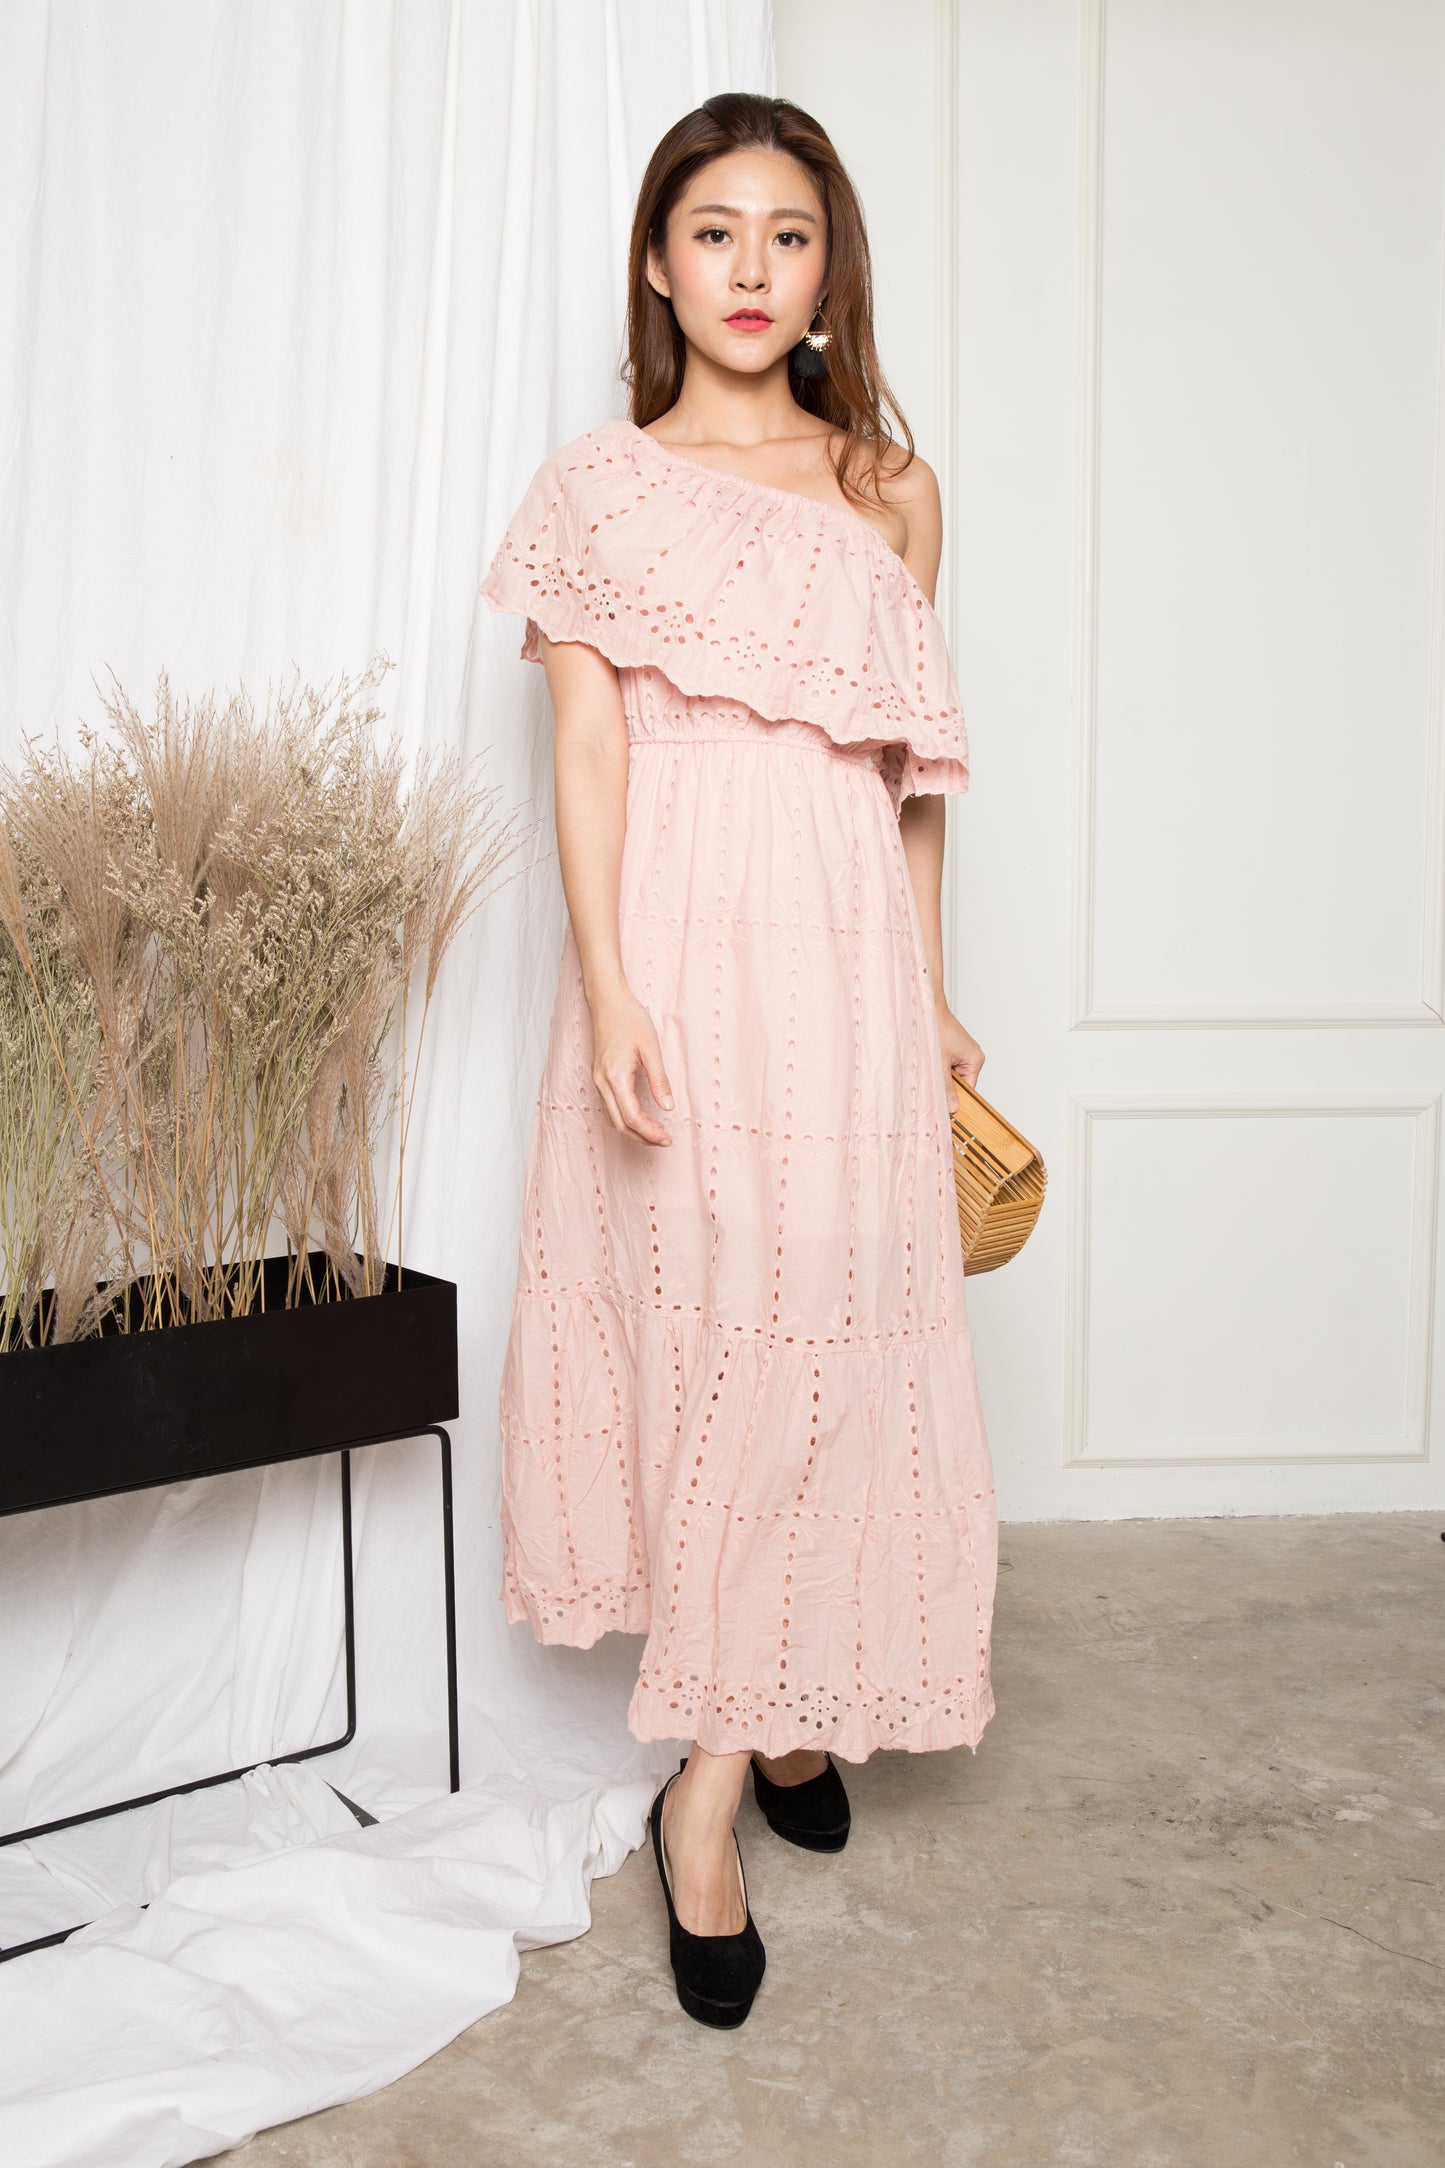 LUXE - Adalina 3 Ways Crochet Maxi Dress in Pink